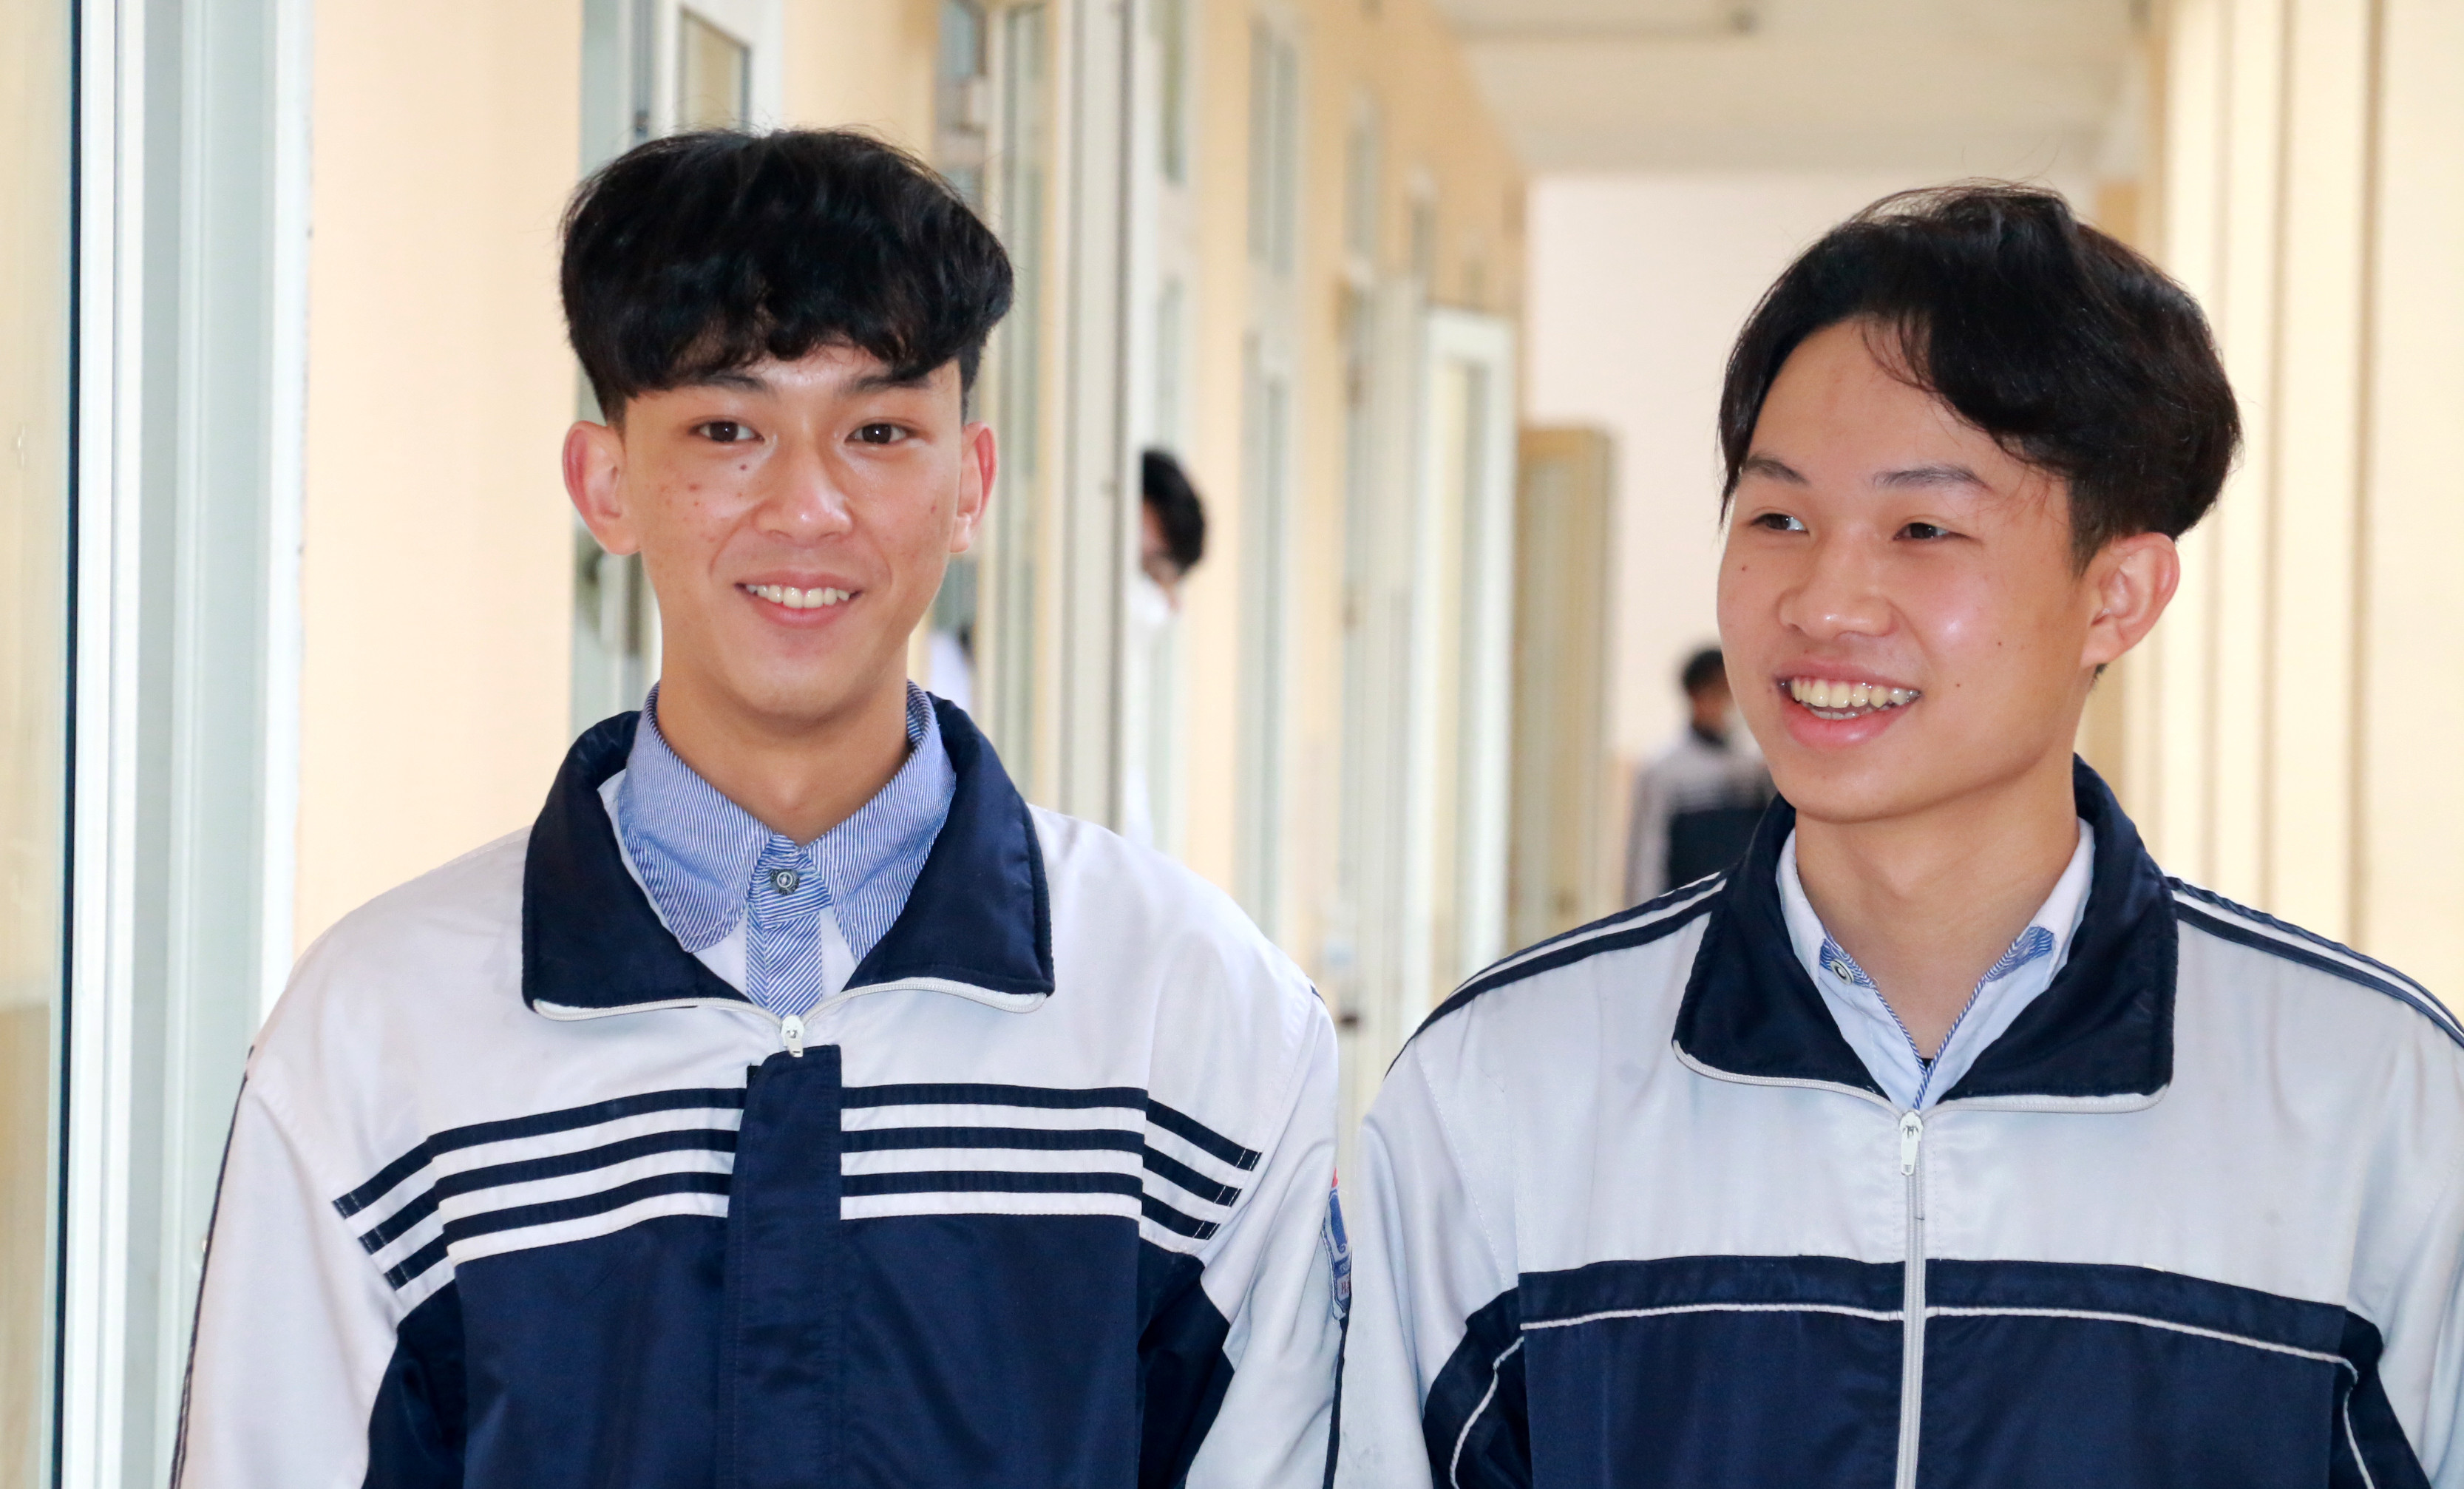 Mặc dù học hai trường khác nhau nhưng hai người bạn thân đã cùng hợp tác để triển khai dự án NCKH. Ảnh: MH